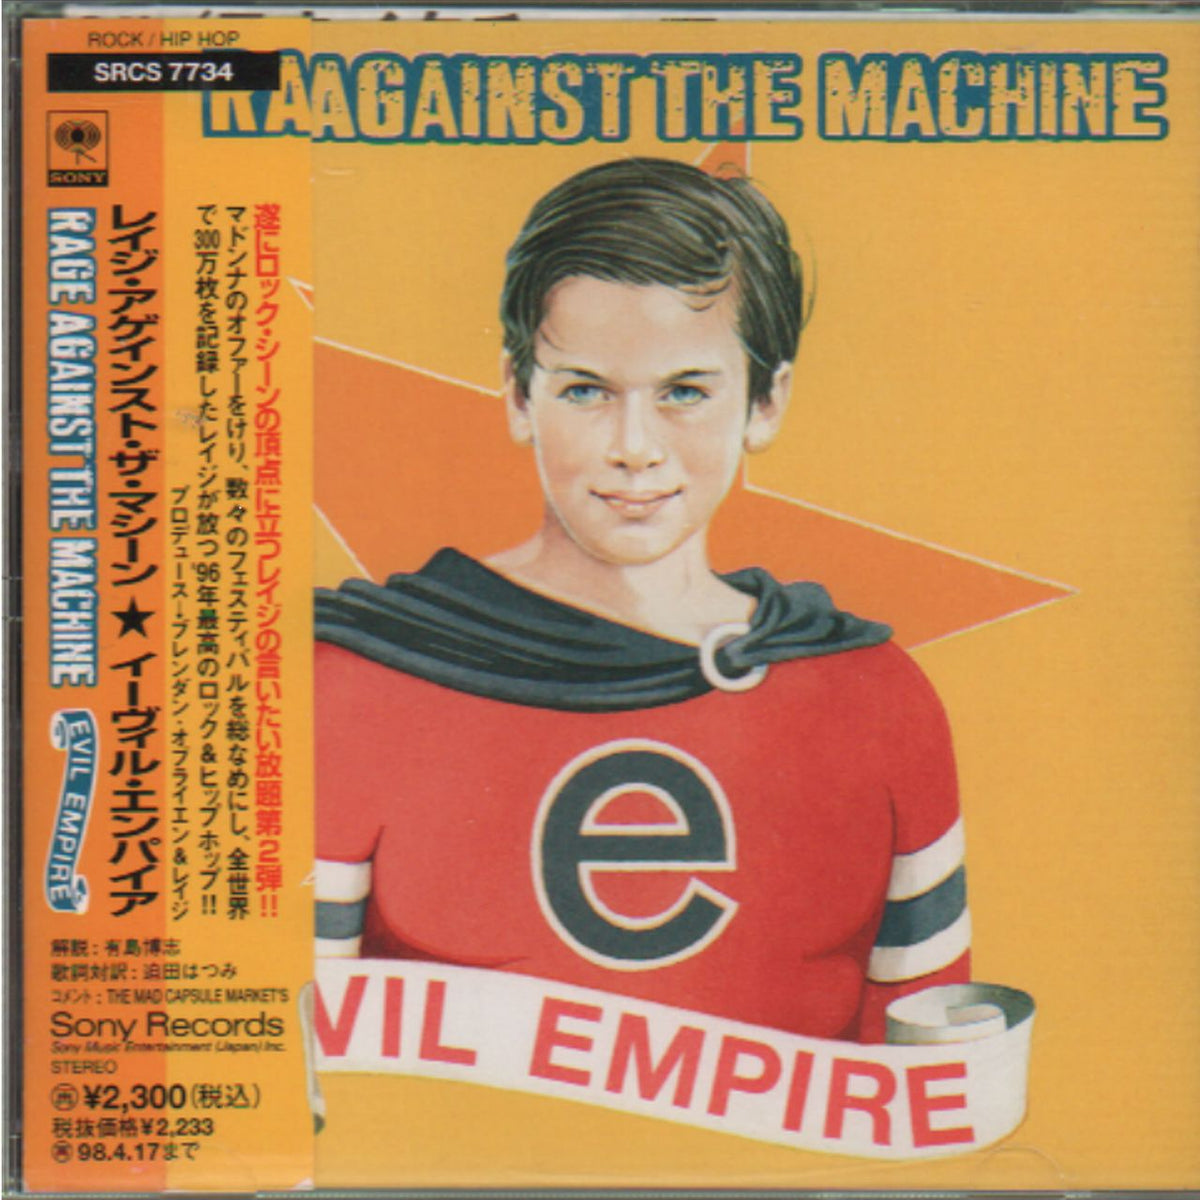 Rage Against The Machine Evil Empire Japanese Promo CD album